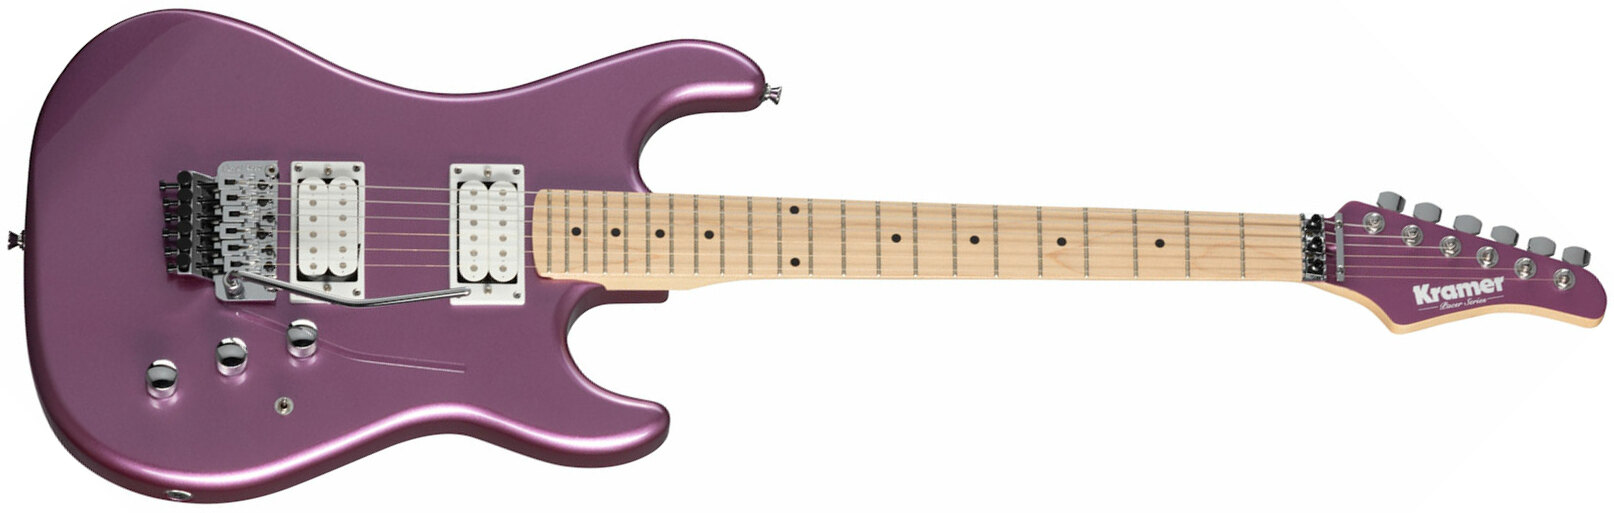 Kramer Pacer Classic 2h Fr Mn - Purple Passion Metallic - Guitare Électrique Forme Str - Main picture